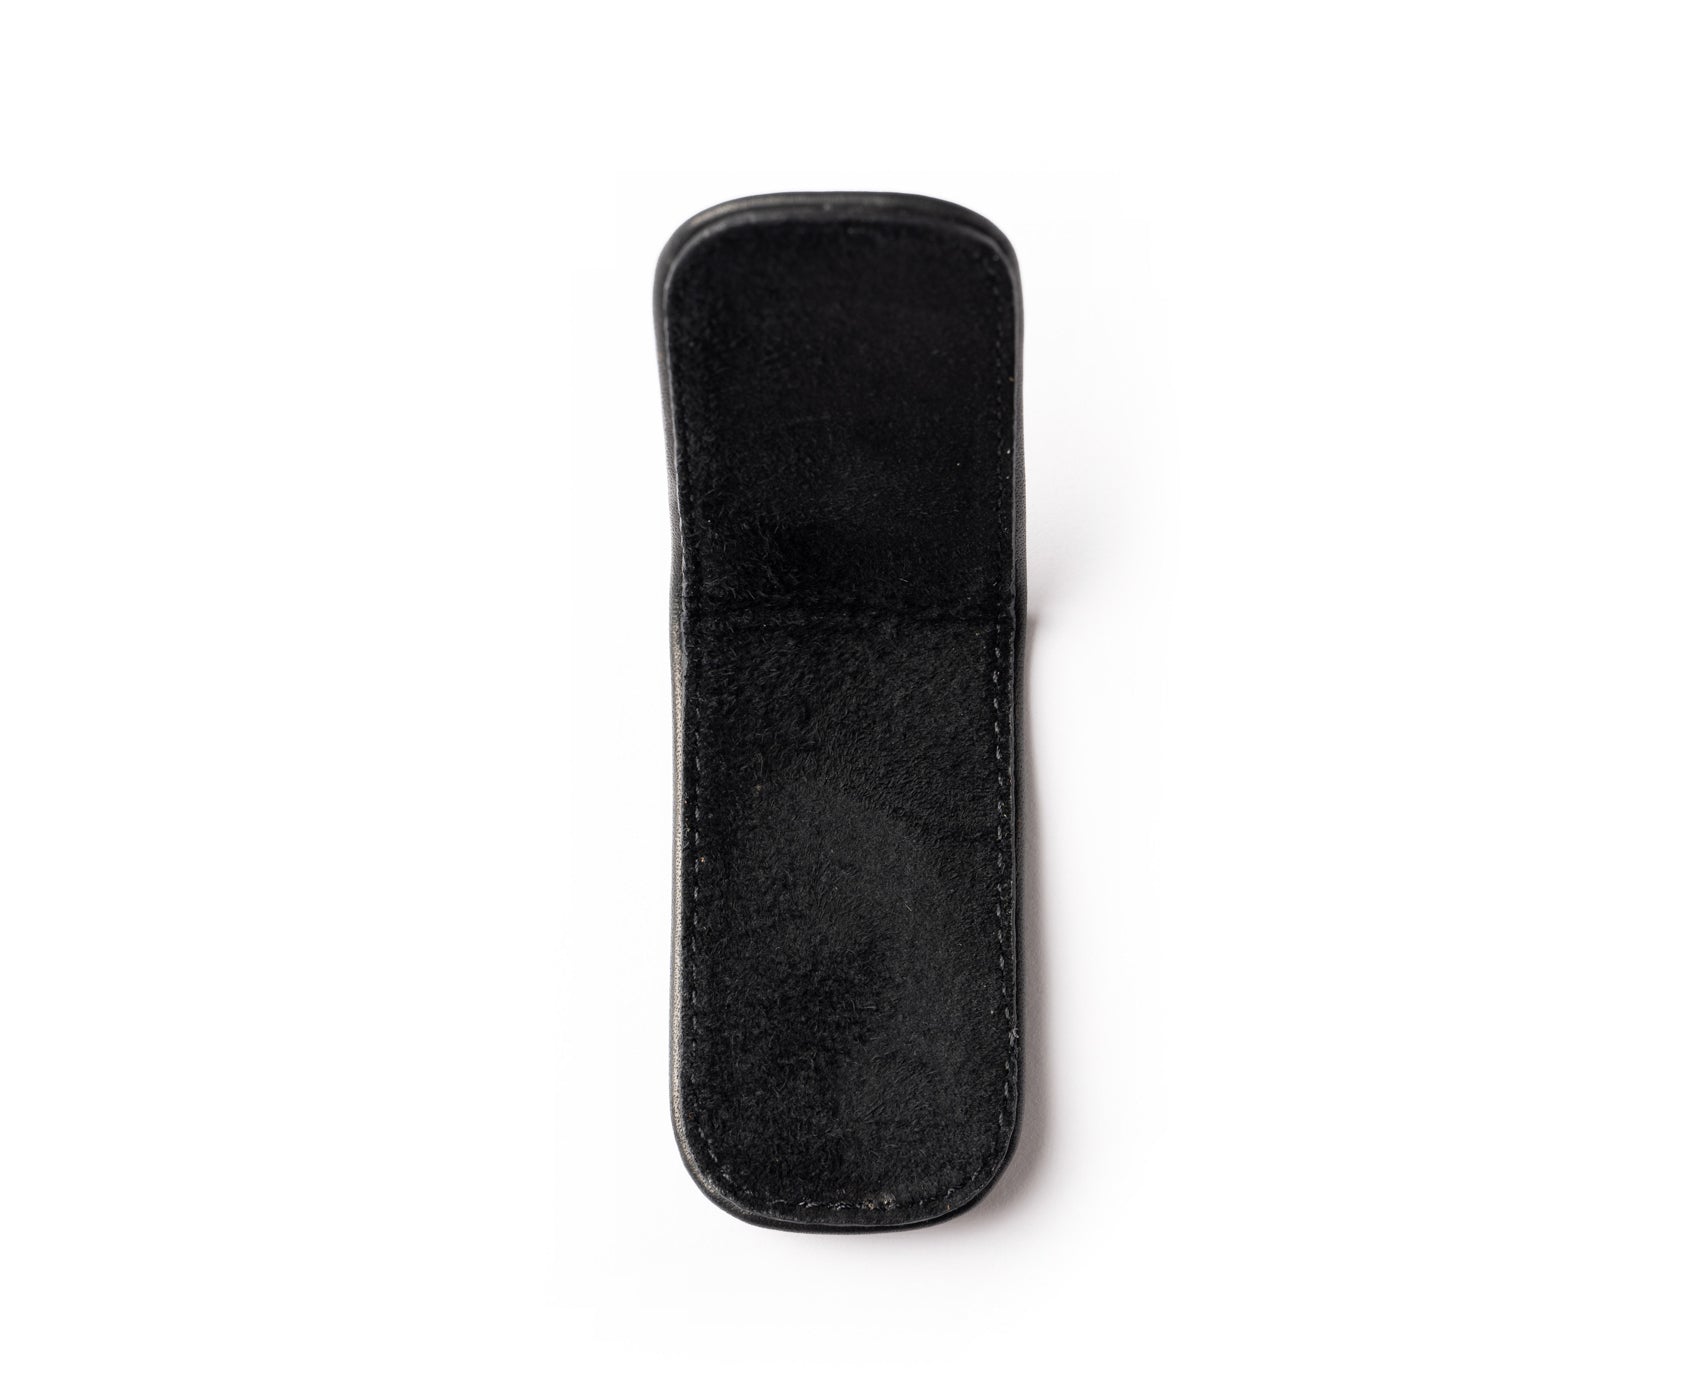 SW-936 Leather Magnetic Money Clip Wallet - Black Top Grain Cowhide